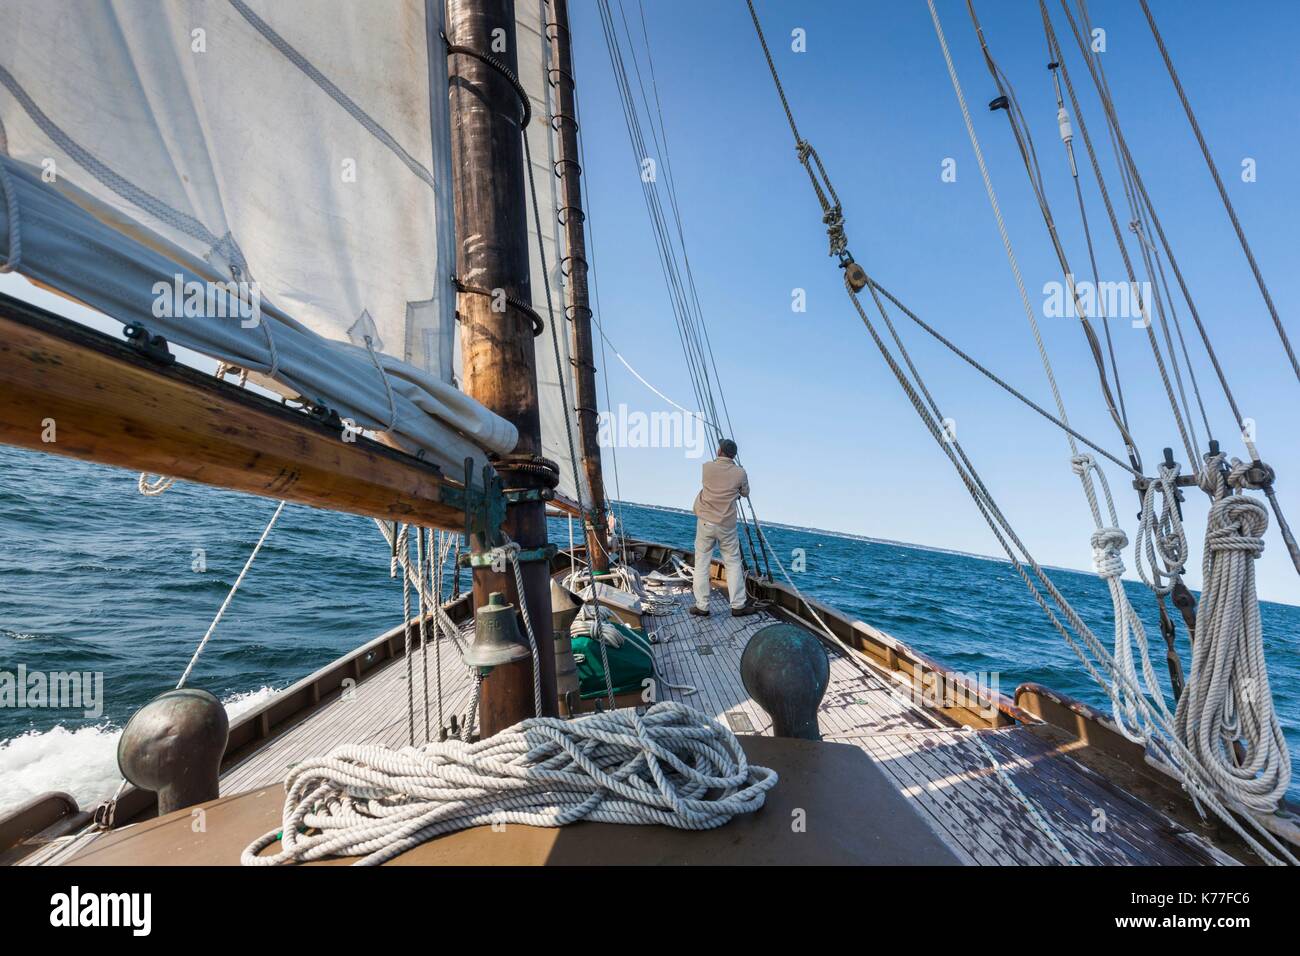 United States, Massachusetts, Cape Ann, Gloucester, America's Oldest Seaport, Gloucester Schooner Festival, schooner sailing ship crew Stock Photo